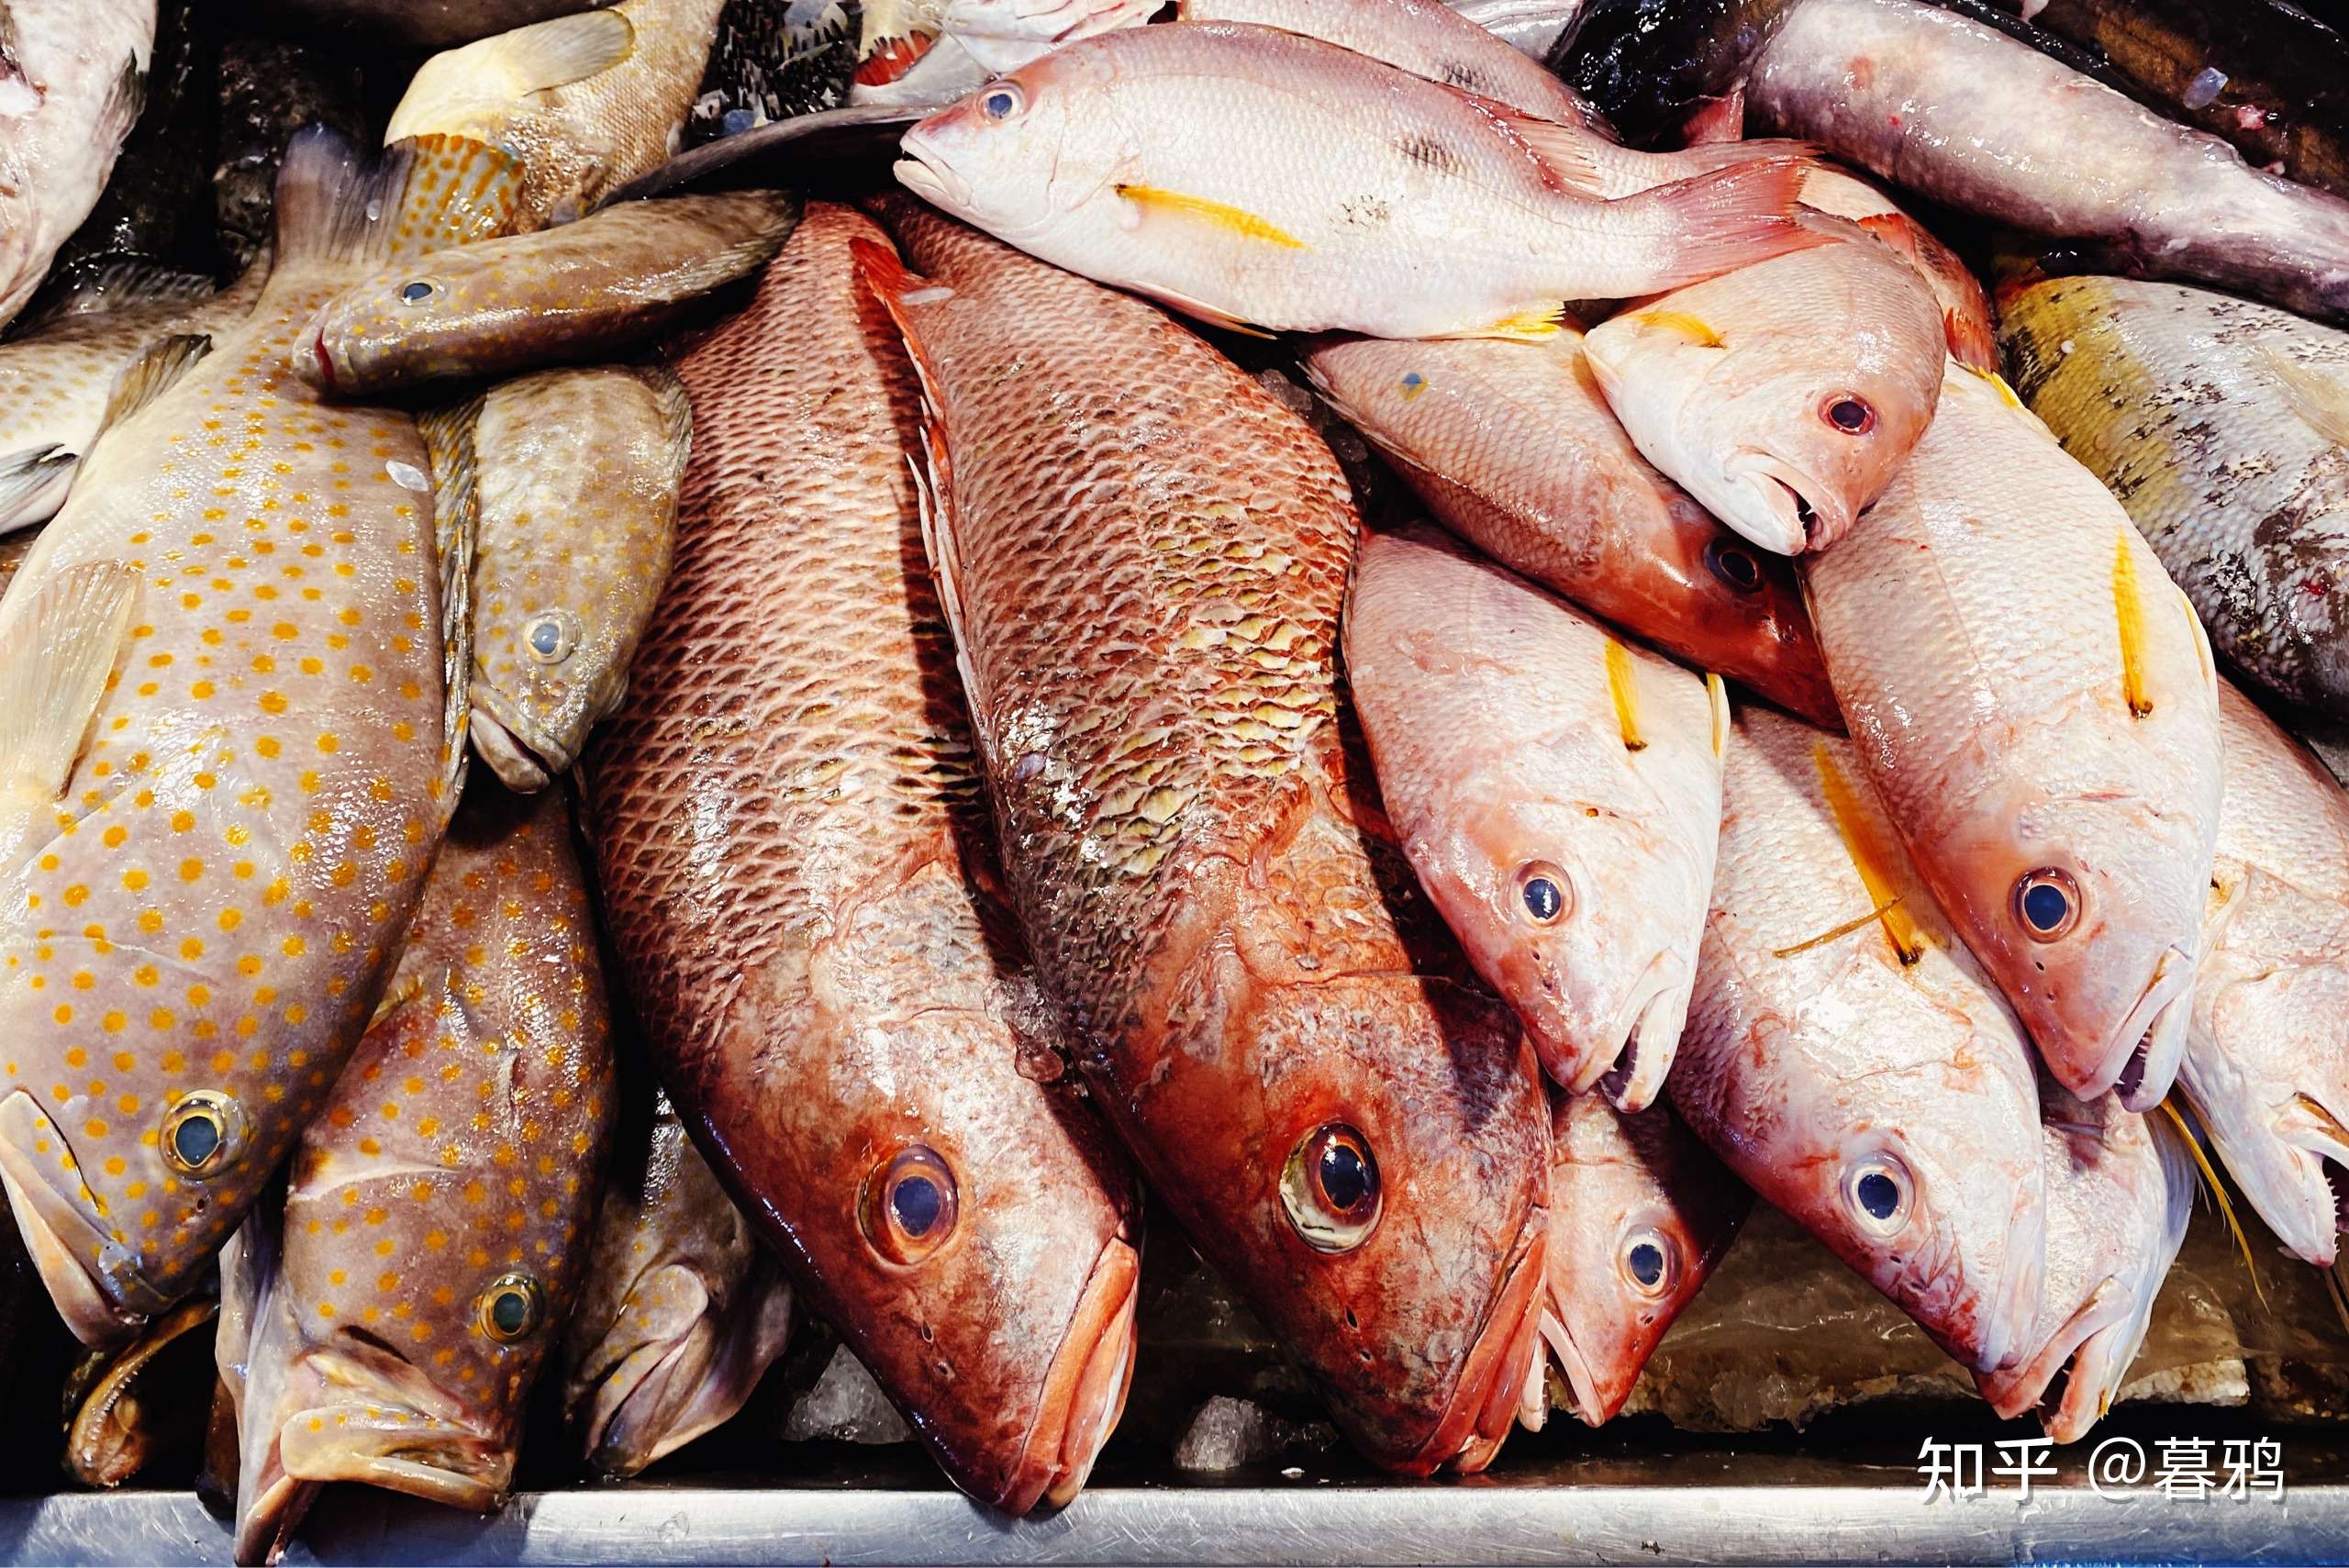 暮鸦 的想法: 海南菜市场鱼类 鹦嘴鱼猪齿鱼石斑笛鲷一… 